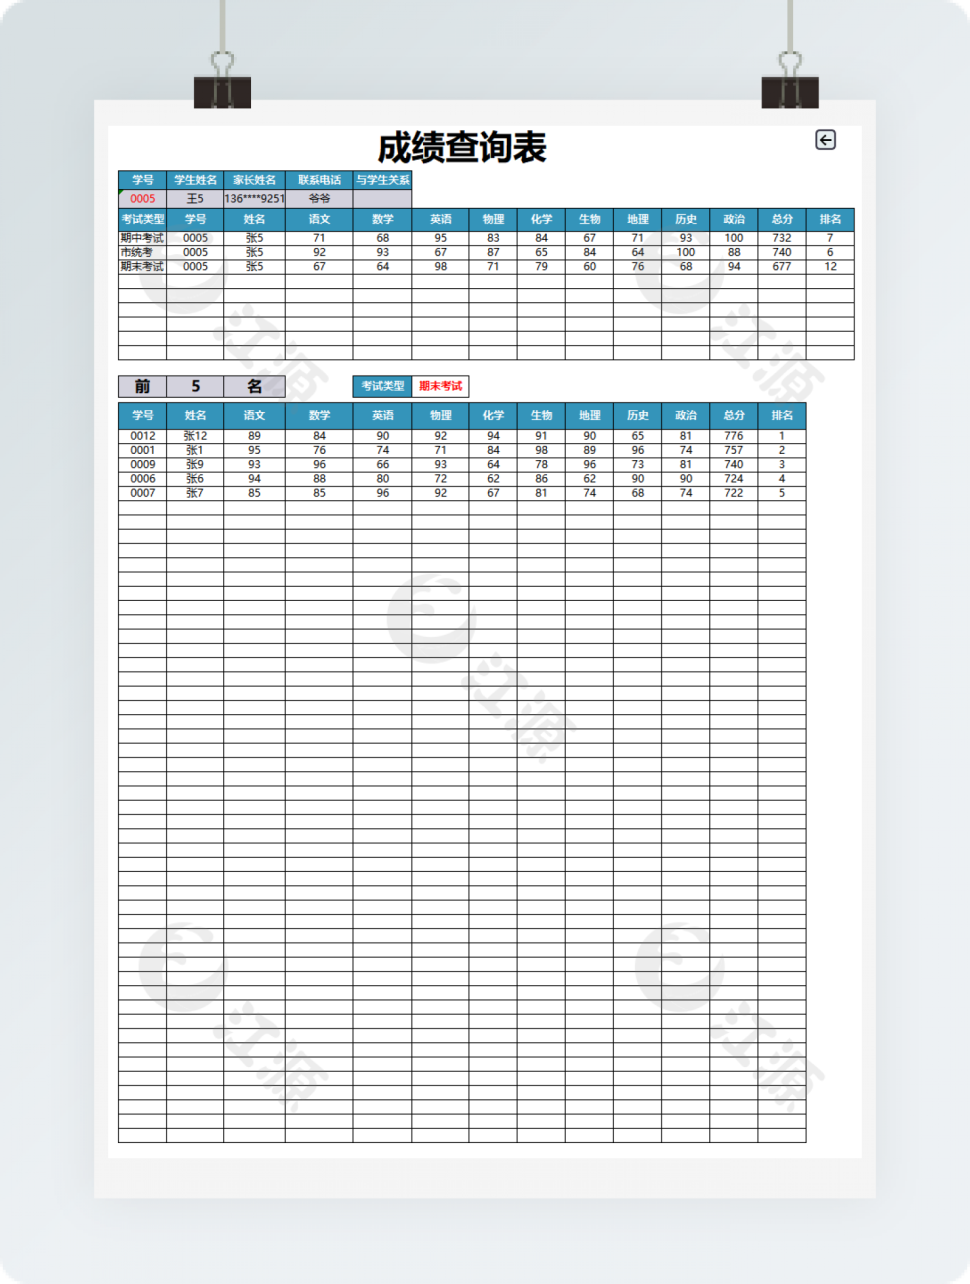 成绩管理系统表格模板(1)